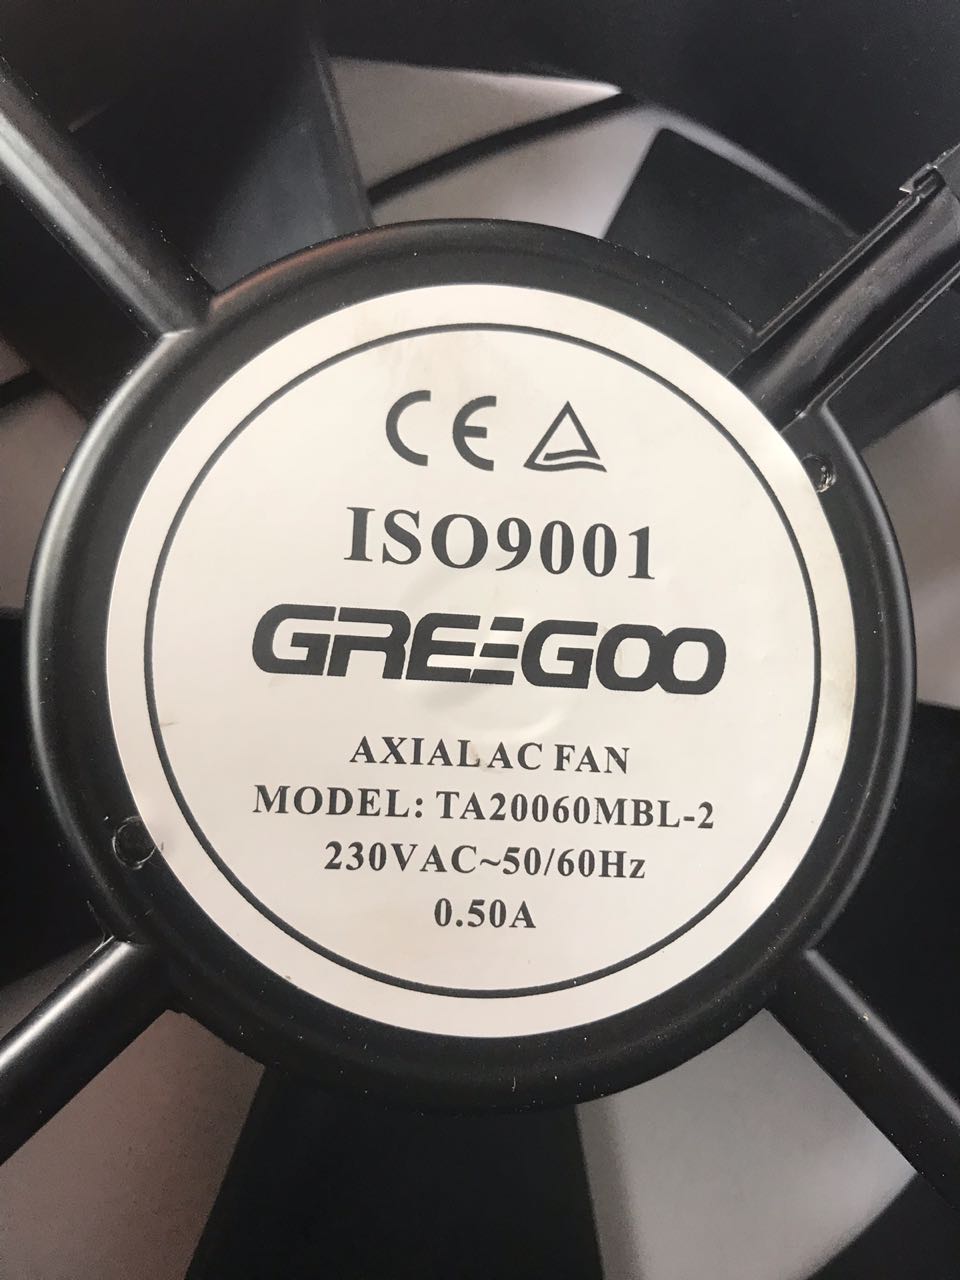 Ventilador Greegoo TA20060MBL-2